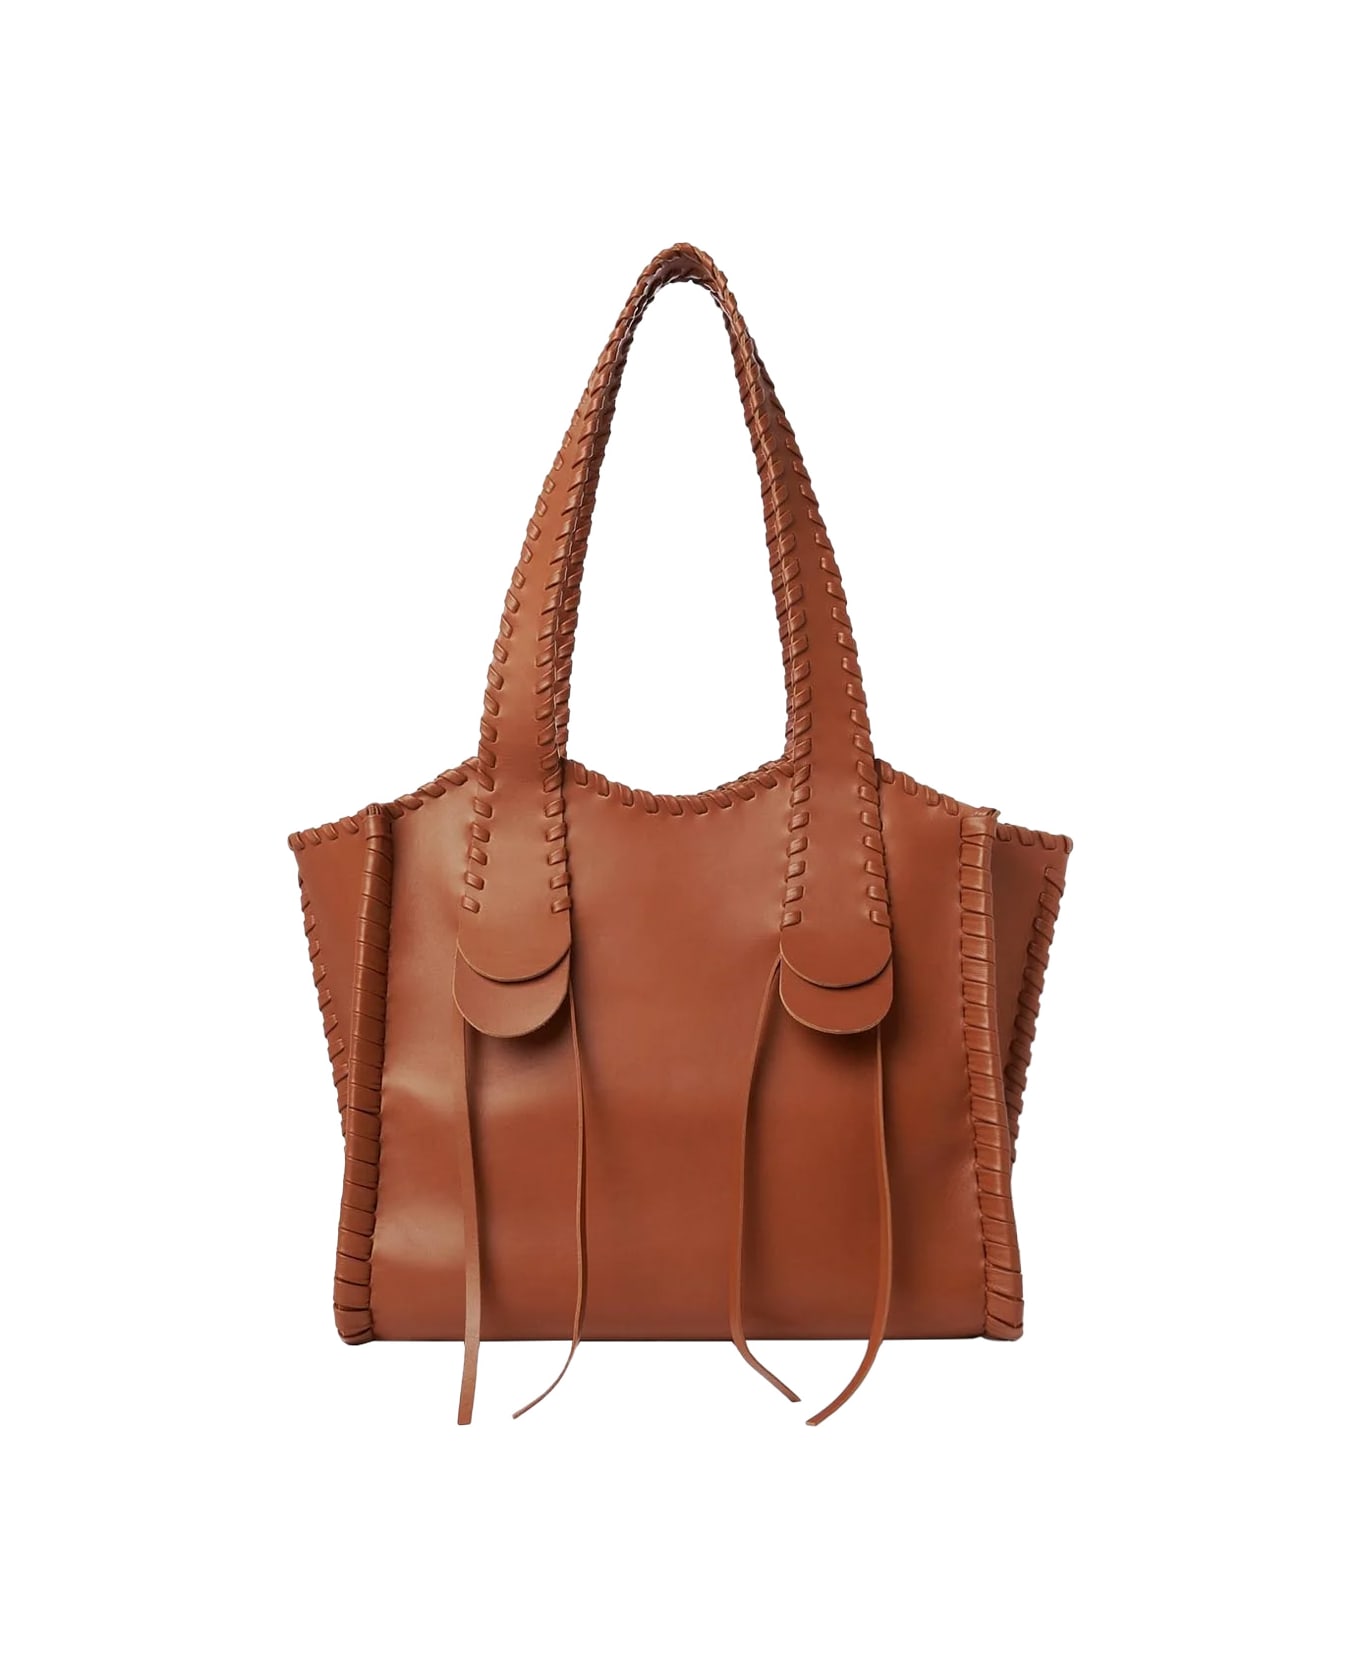 Chloé Caramel Medium Mony Handbag - Brown トートバッグ